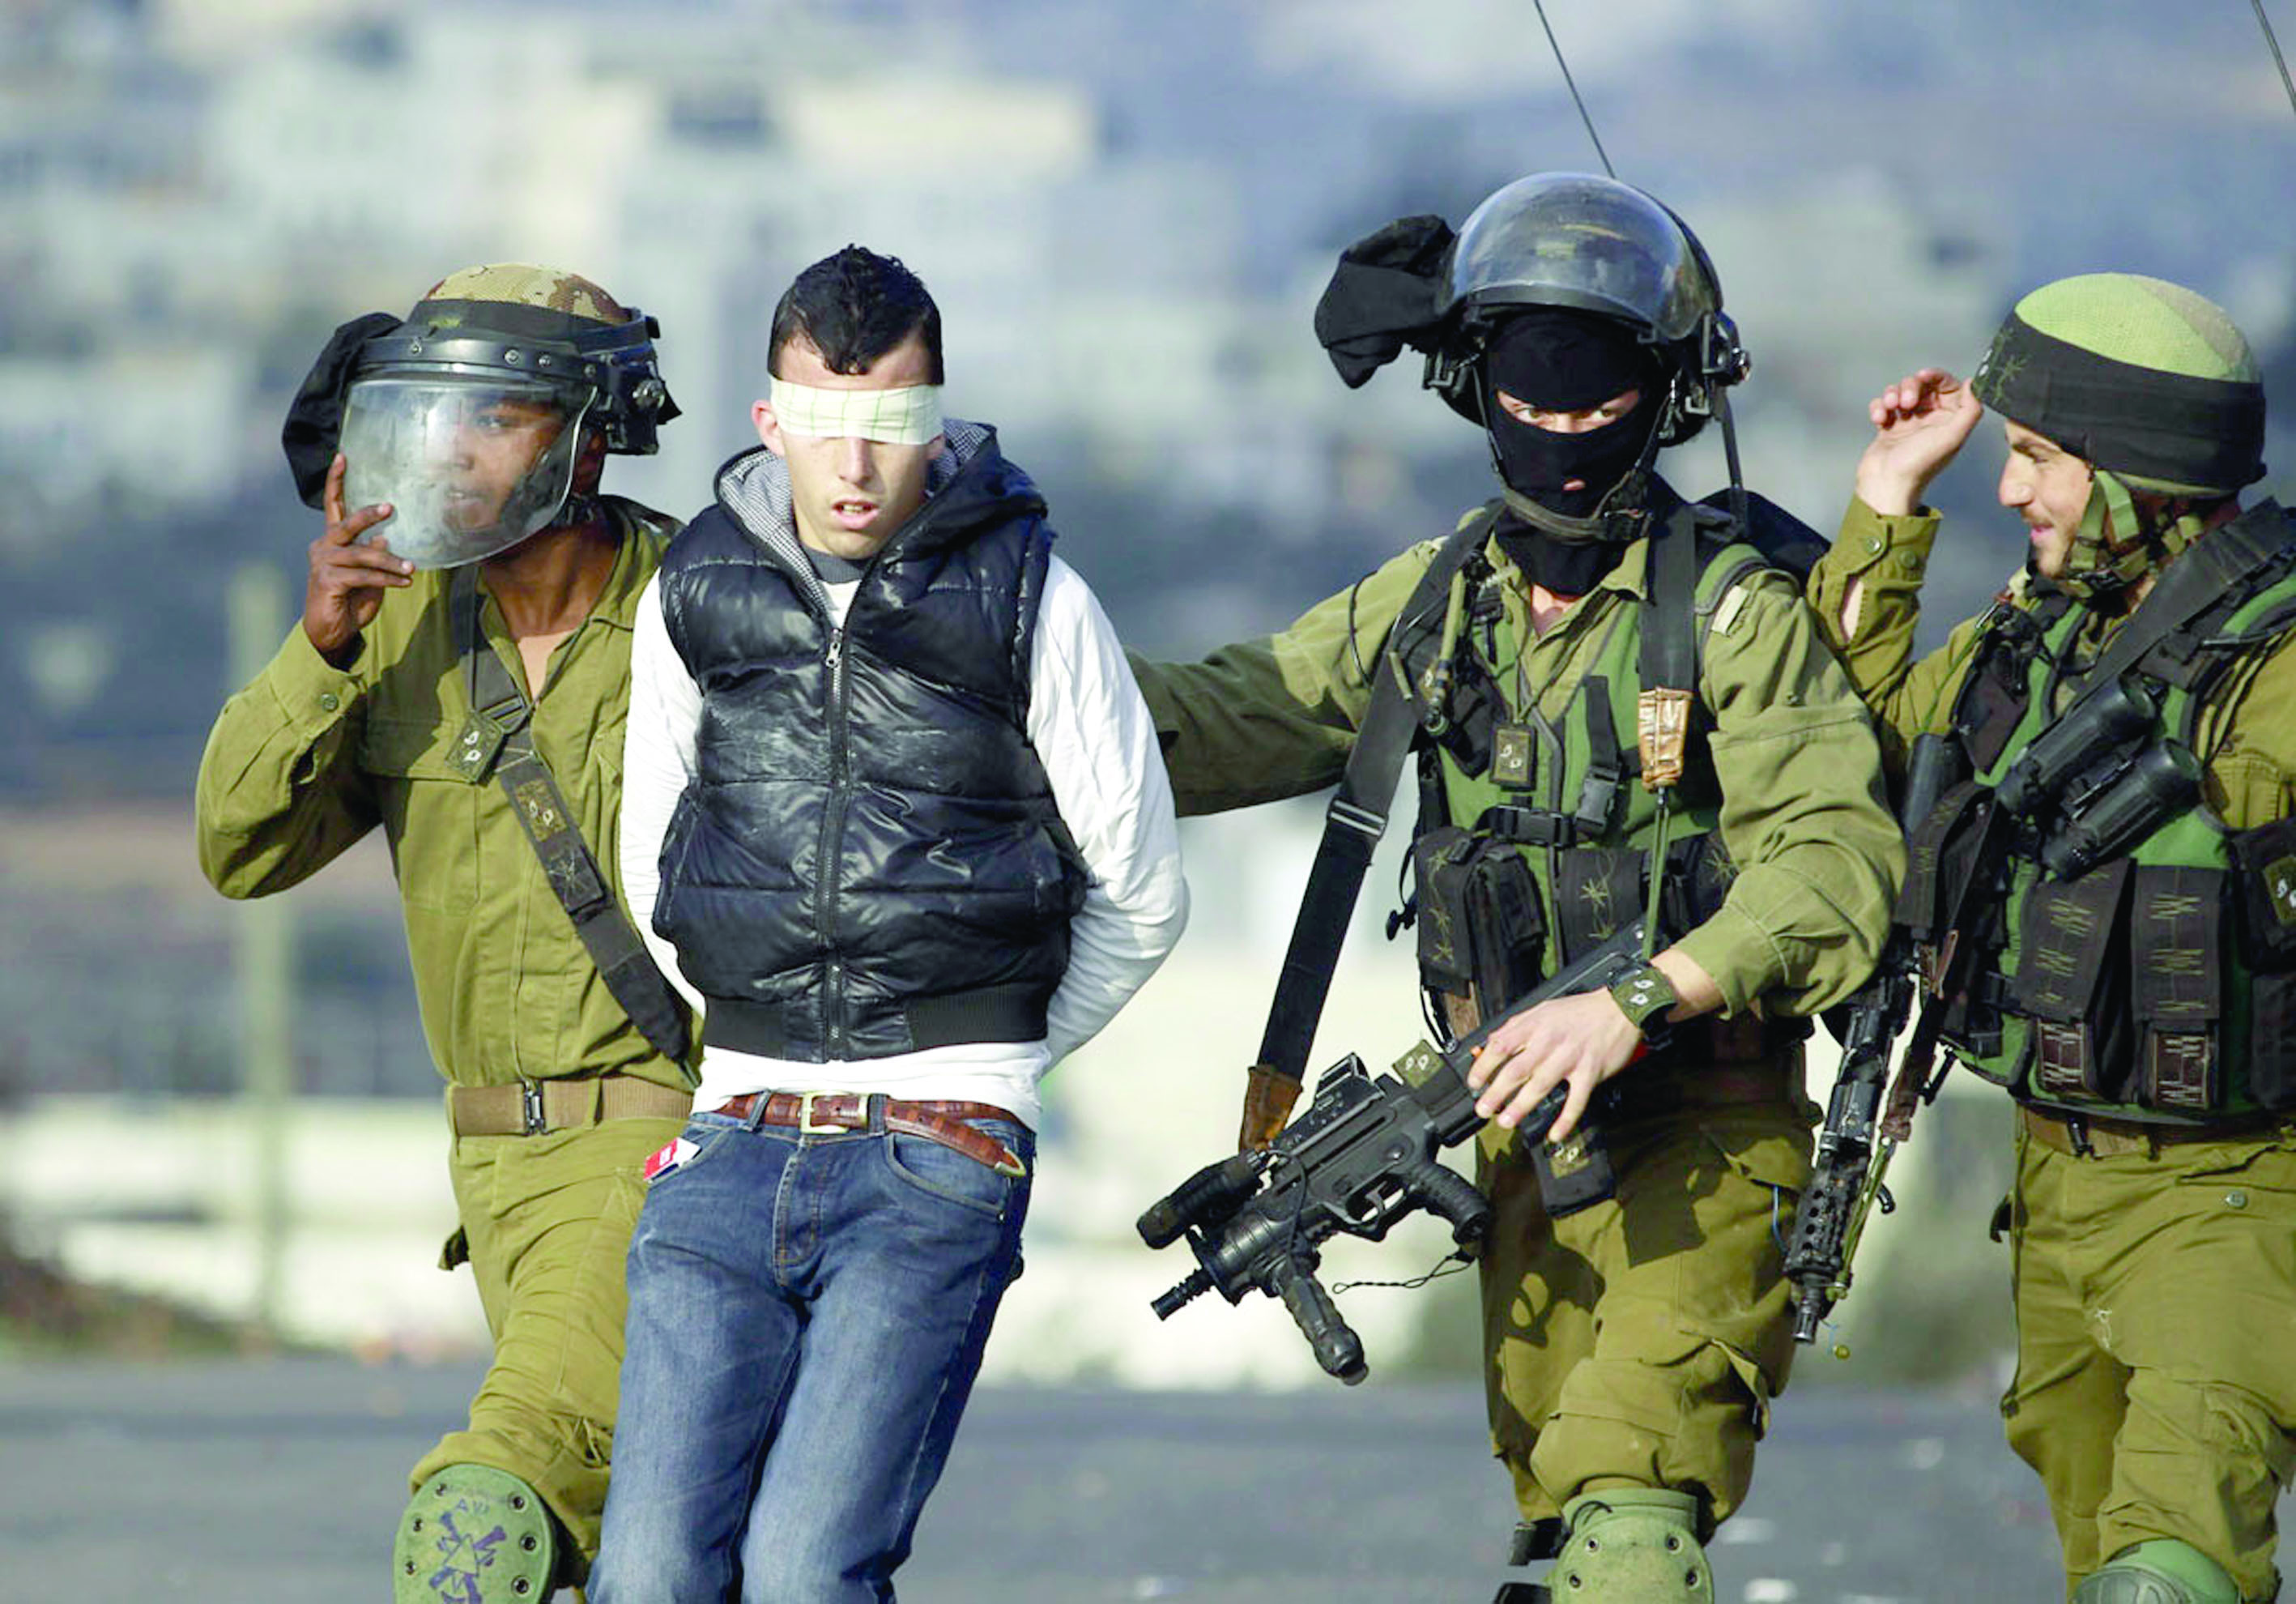 الاحتلال يعتقل 11 فلسطينيا

بينهم مقدسية وأسرى محرّرون